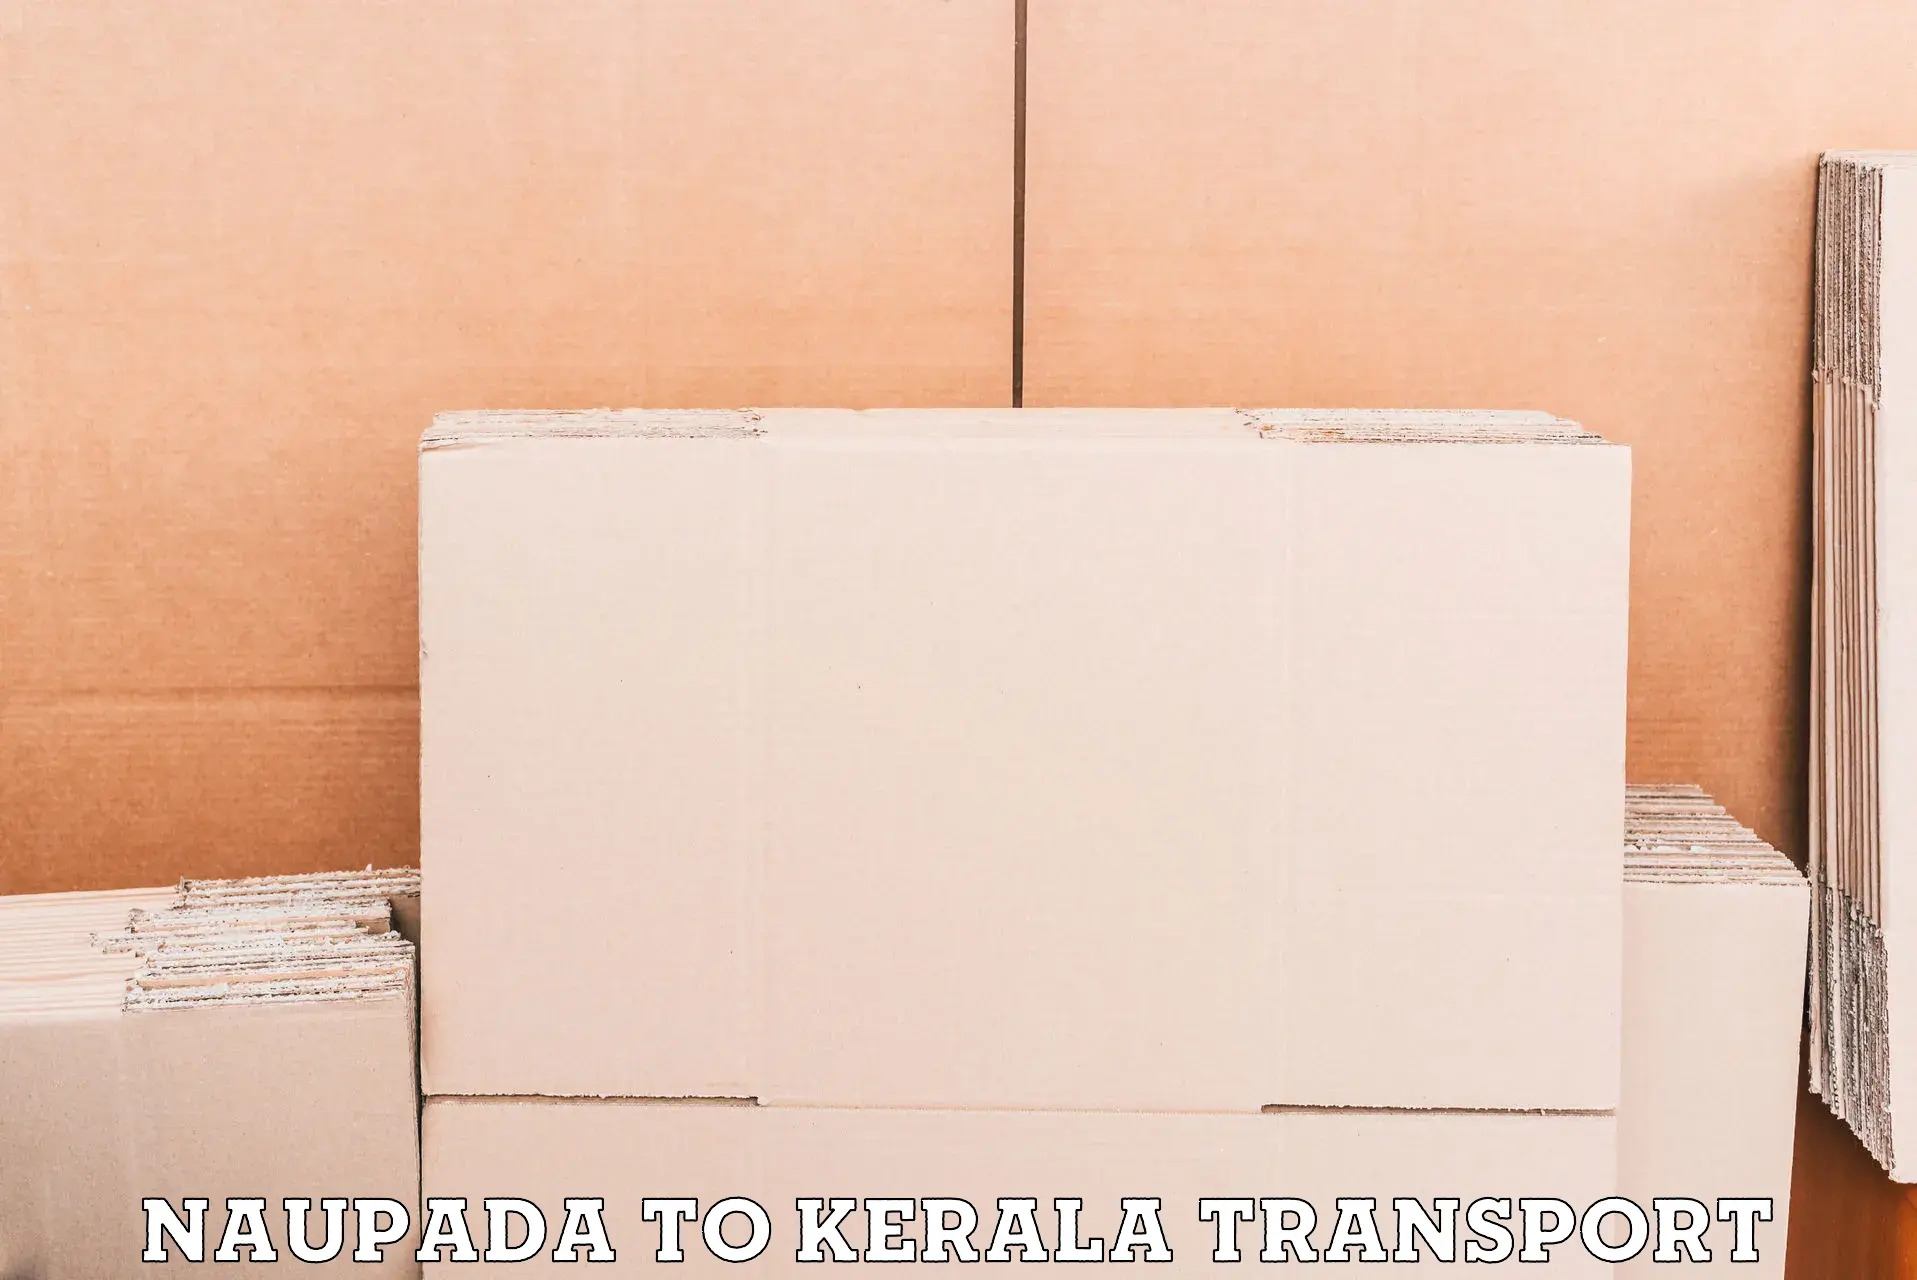 Container transport service in Naupada to Sreekandapuram